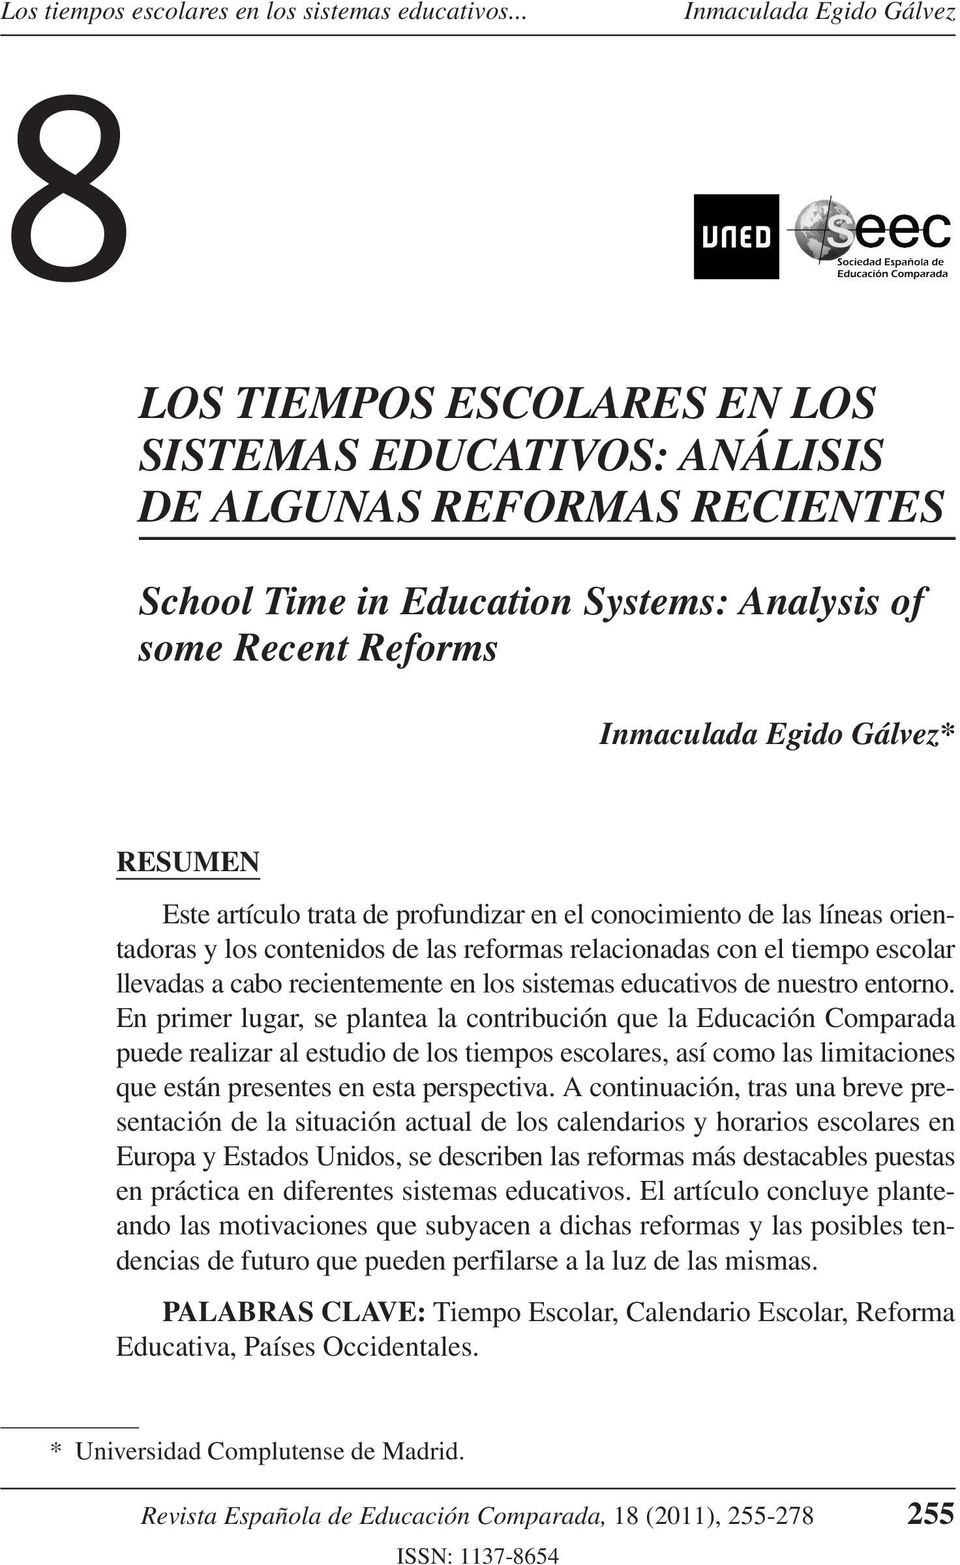 profundizar en el conocimiento de las líneas orientadoras y los contenidos de las reformas relacionadas con el tiempo escolar llevadas a cabo recientemente en los sistemas educativos de nuestro